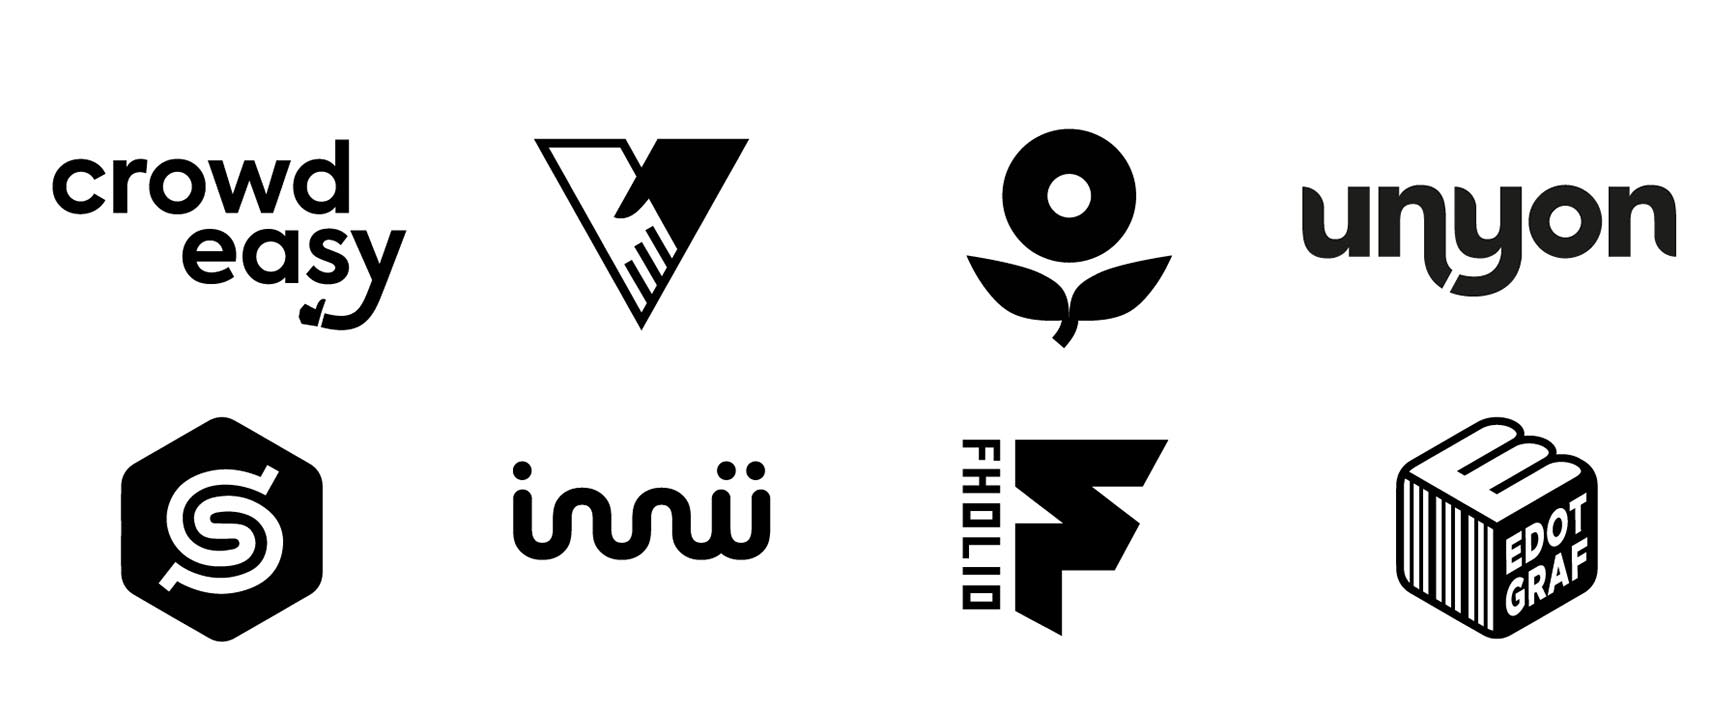 Logotipo y elementos visuales relacionados